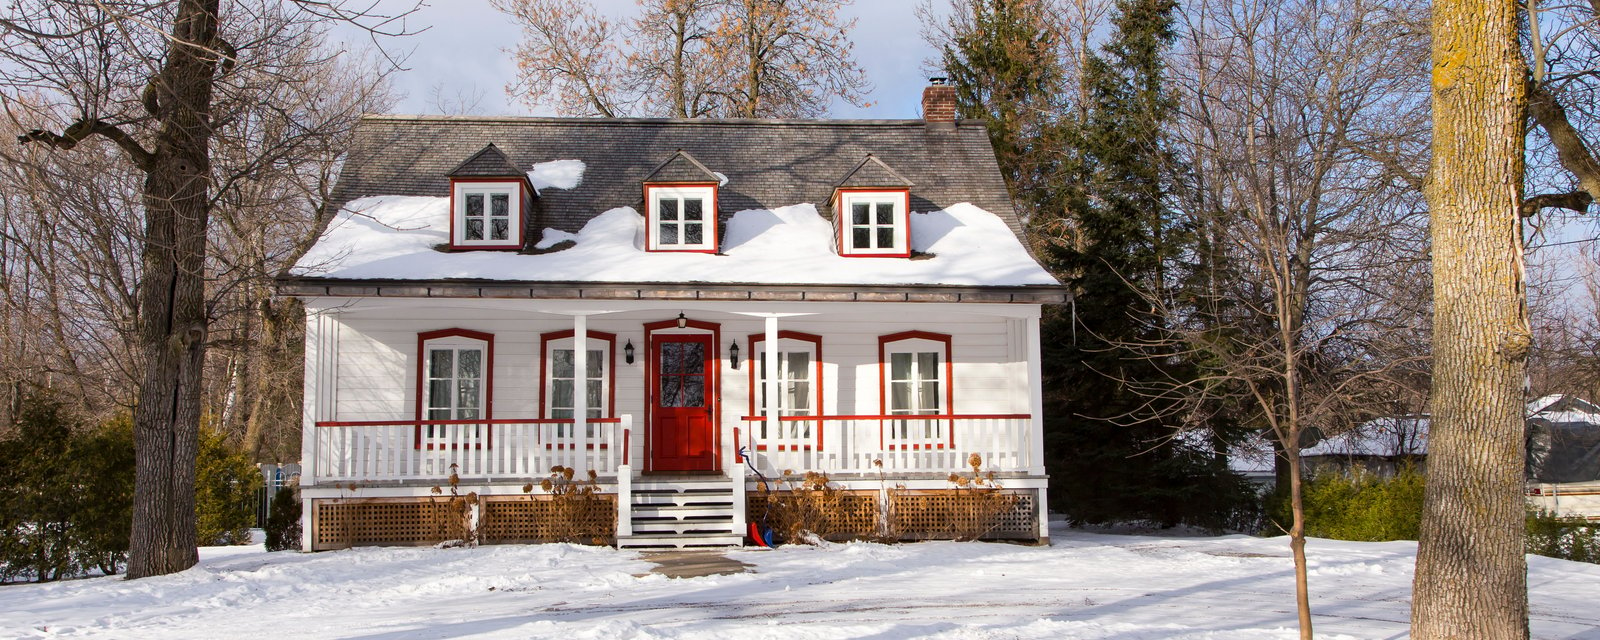 Les prix des maisons continuent d'exploser partout au Québec